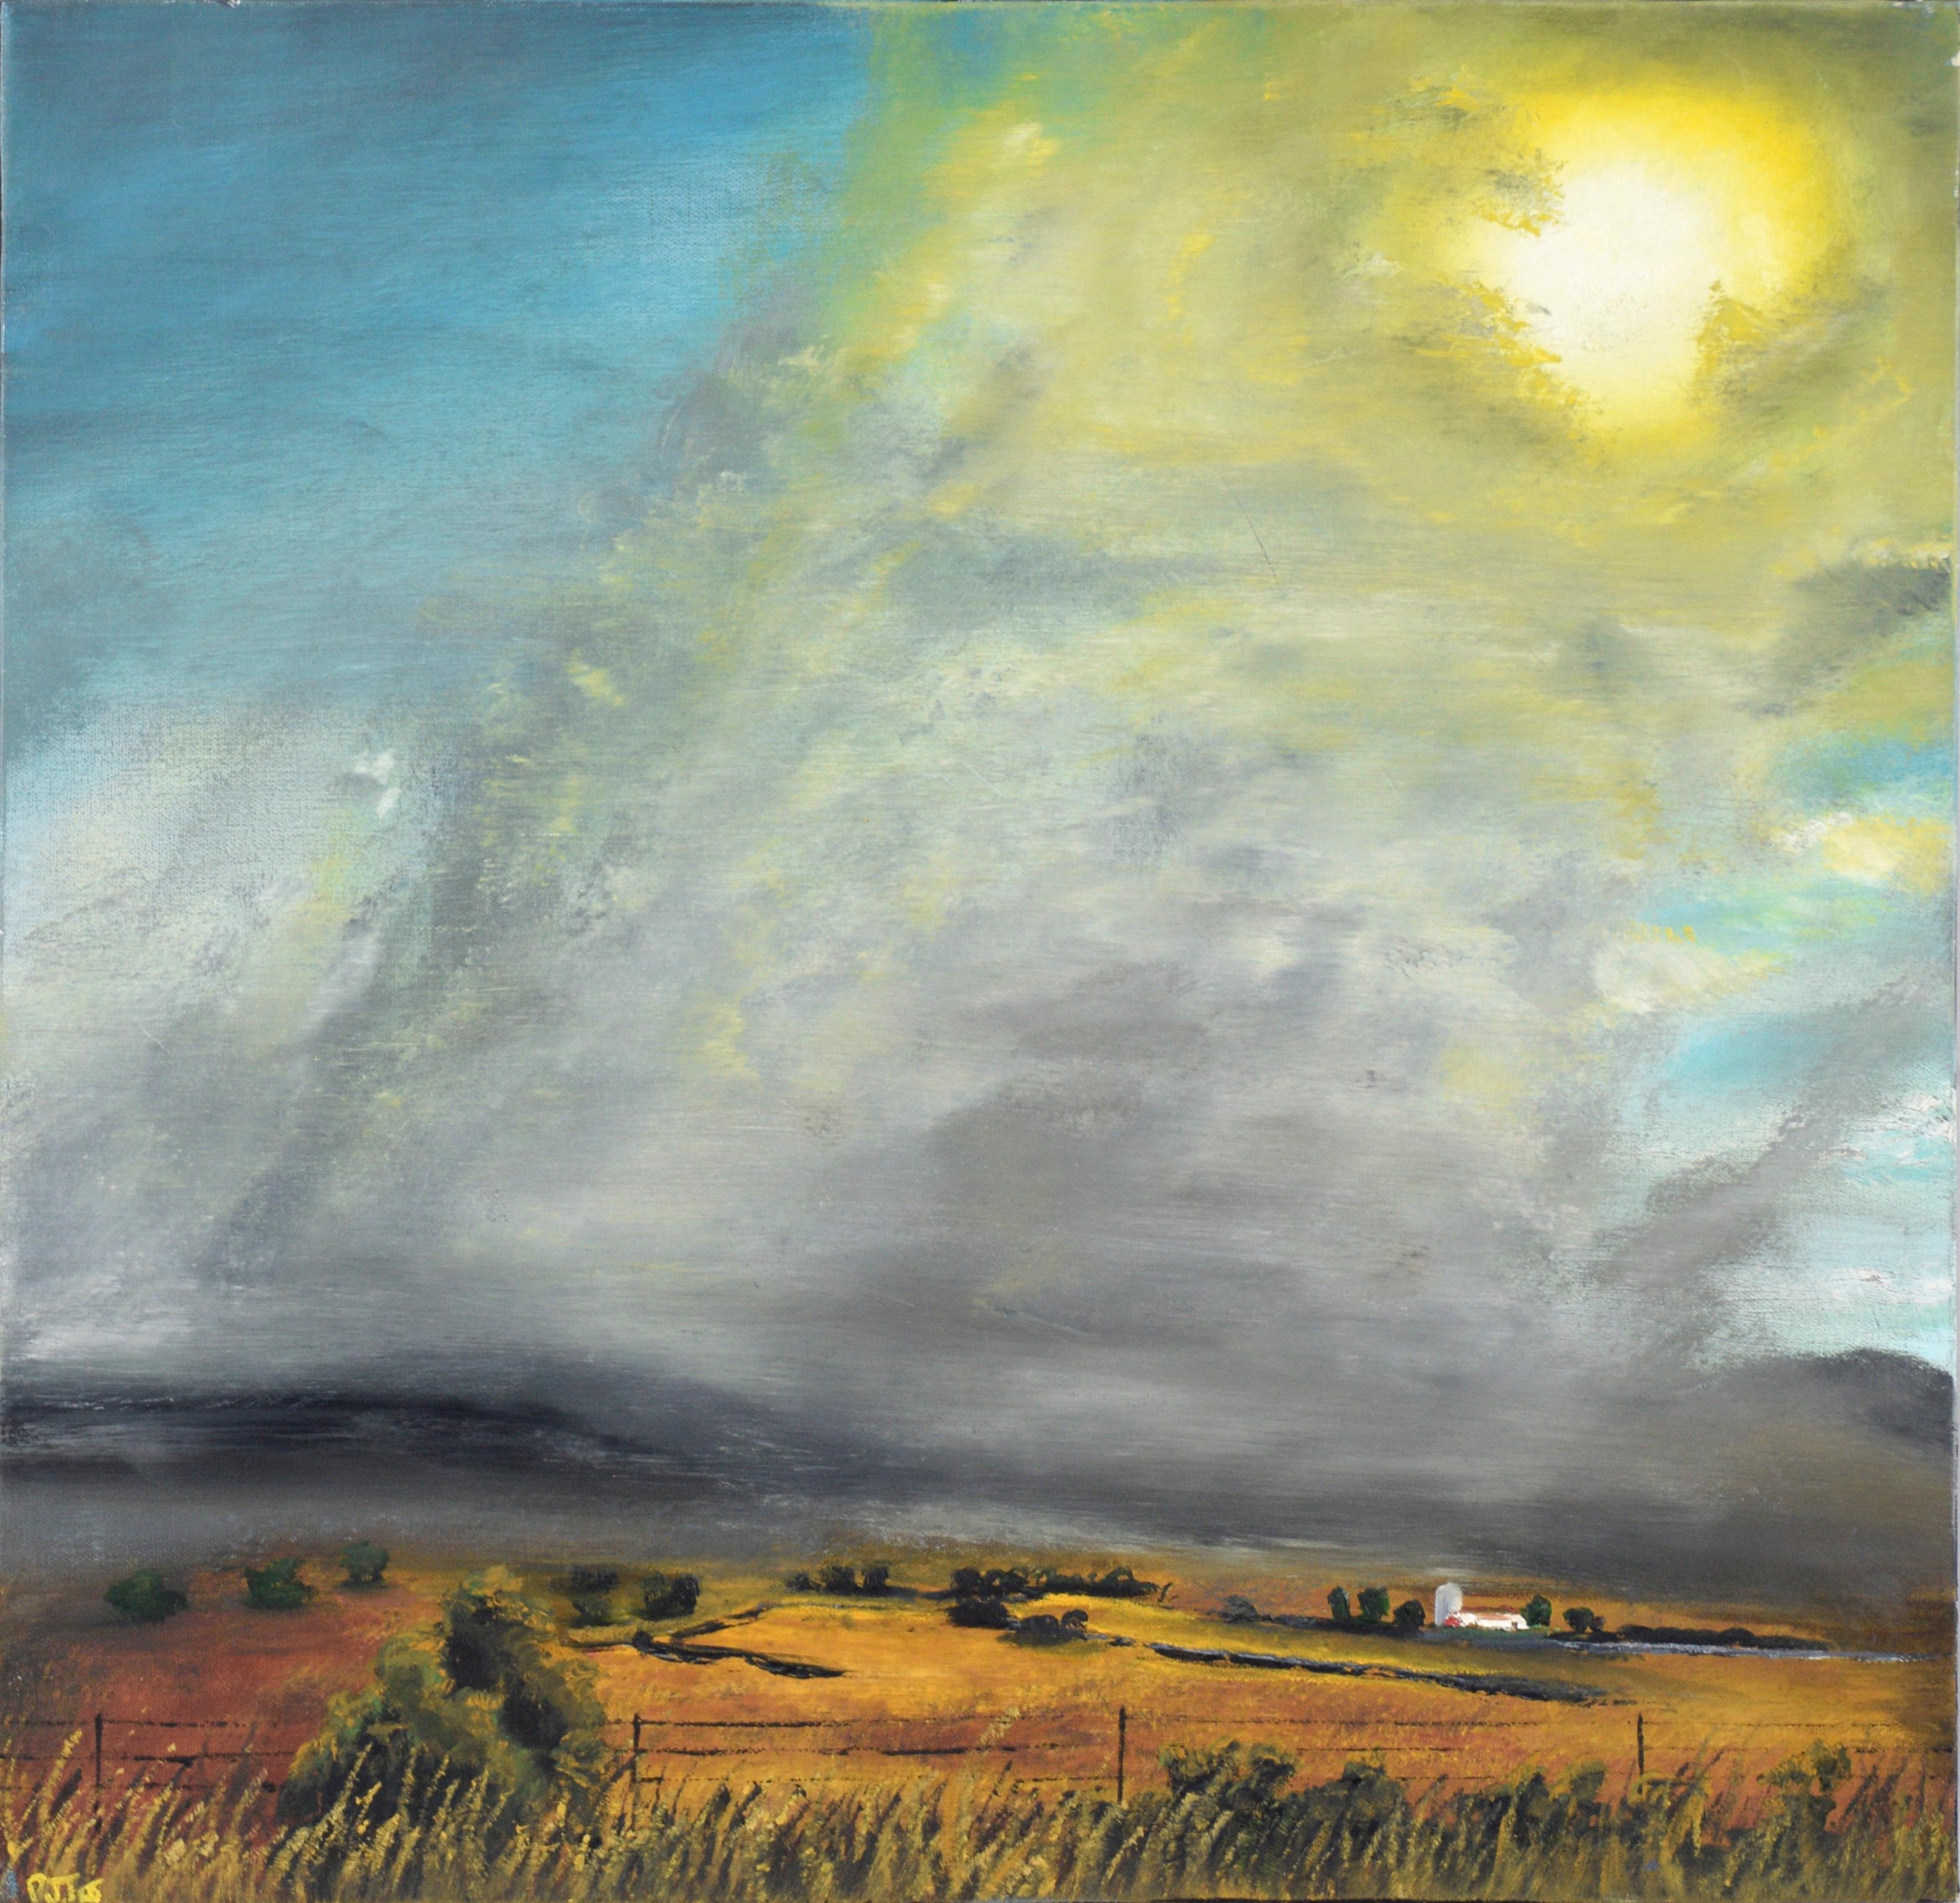 Pete James Johnson Landscape Painting - "Drought" Low-Horizon Midwest Landscape in Oil on Canvas